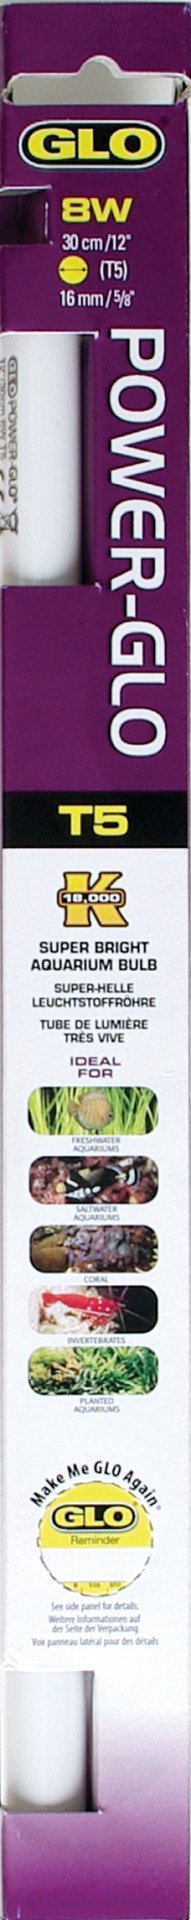 Флуоресцентная лампа POWER-GLO 40 Вт 105 см, Hagen